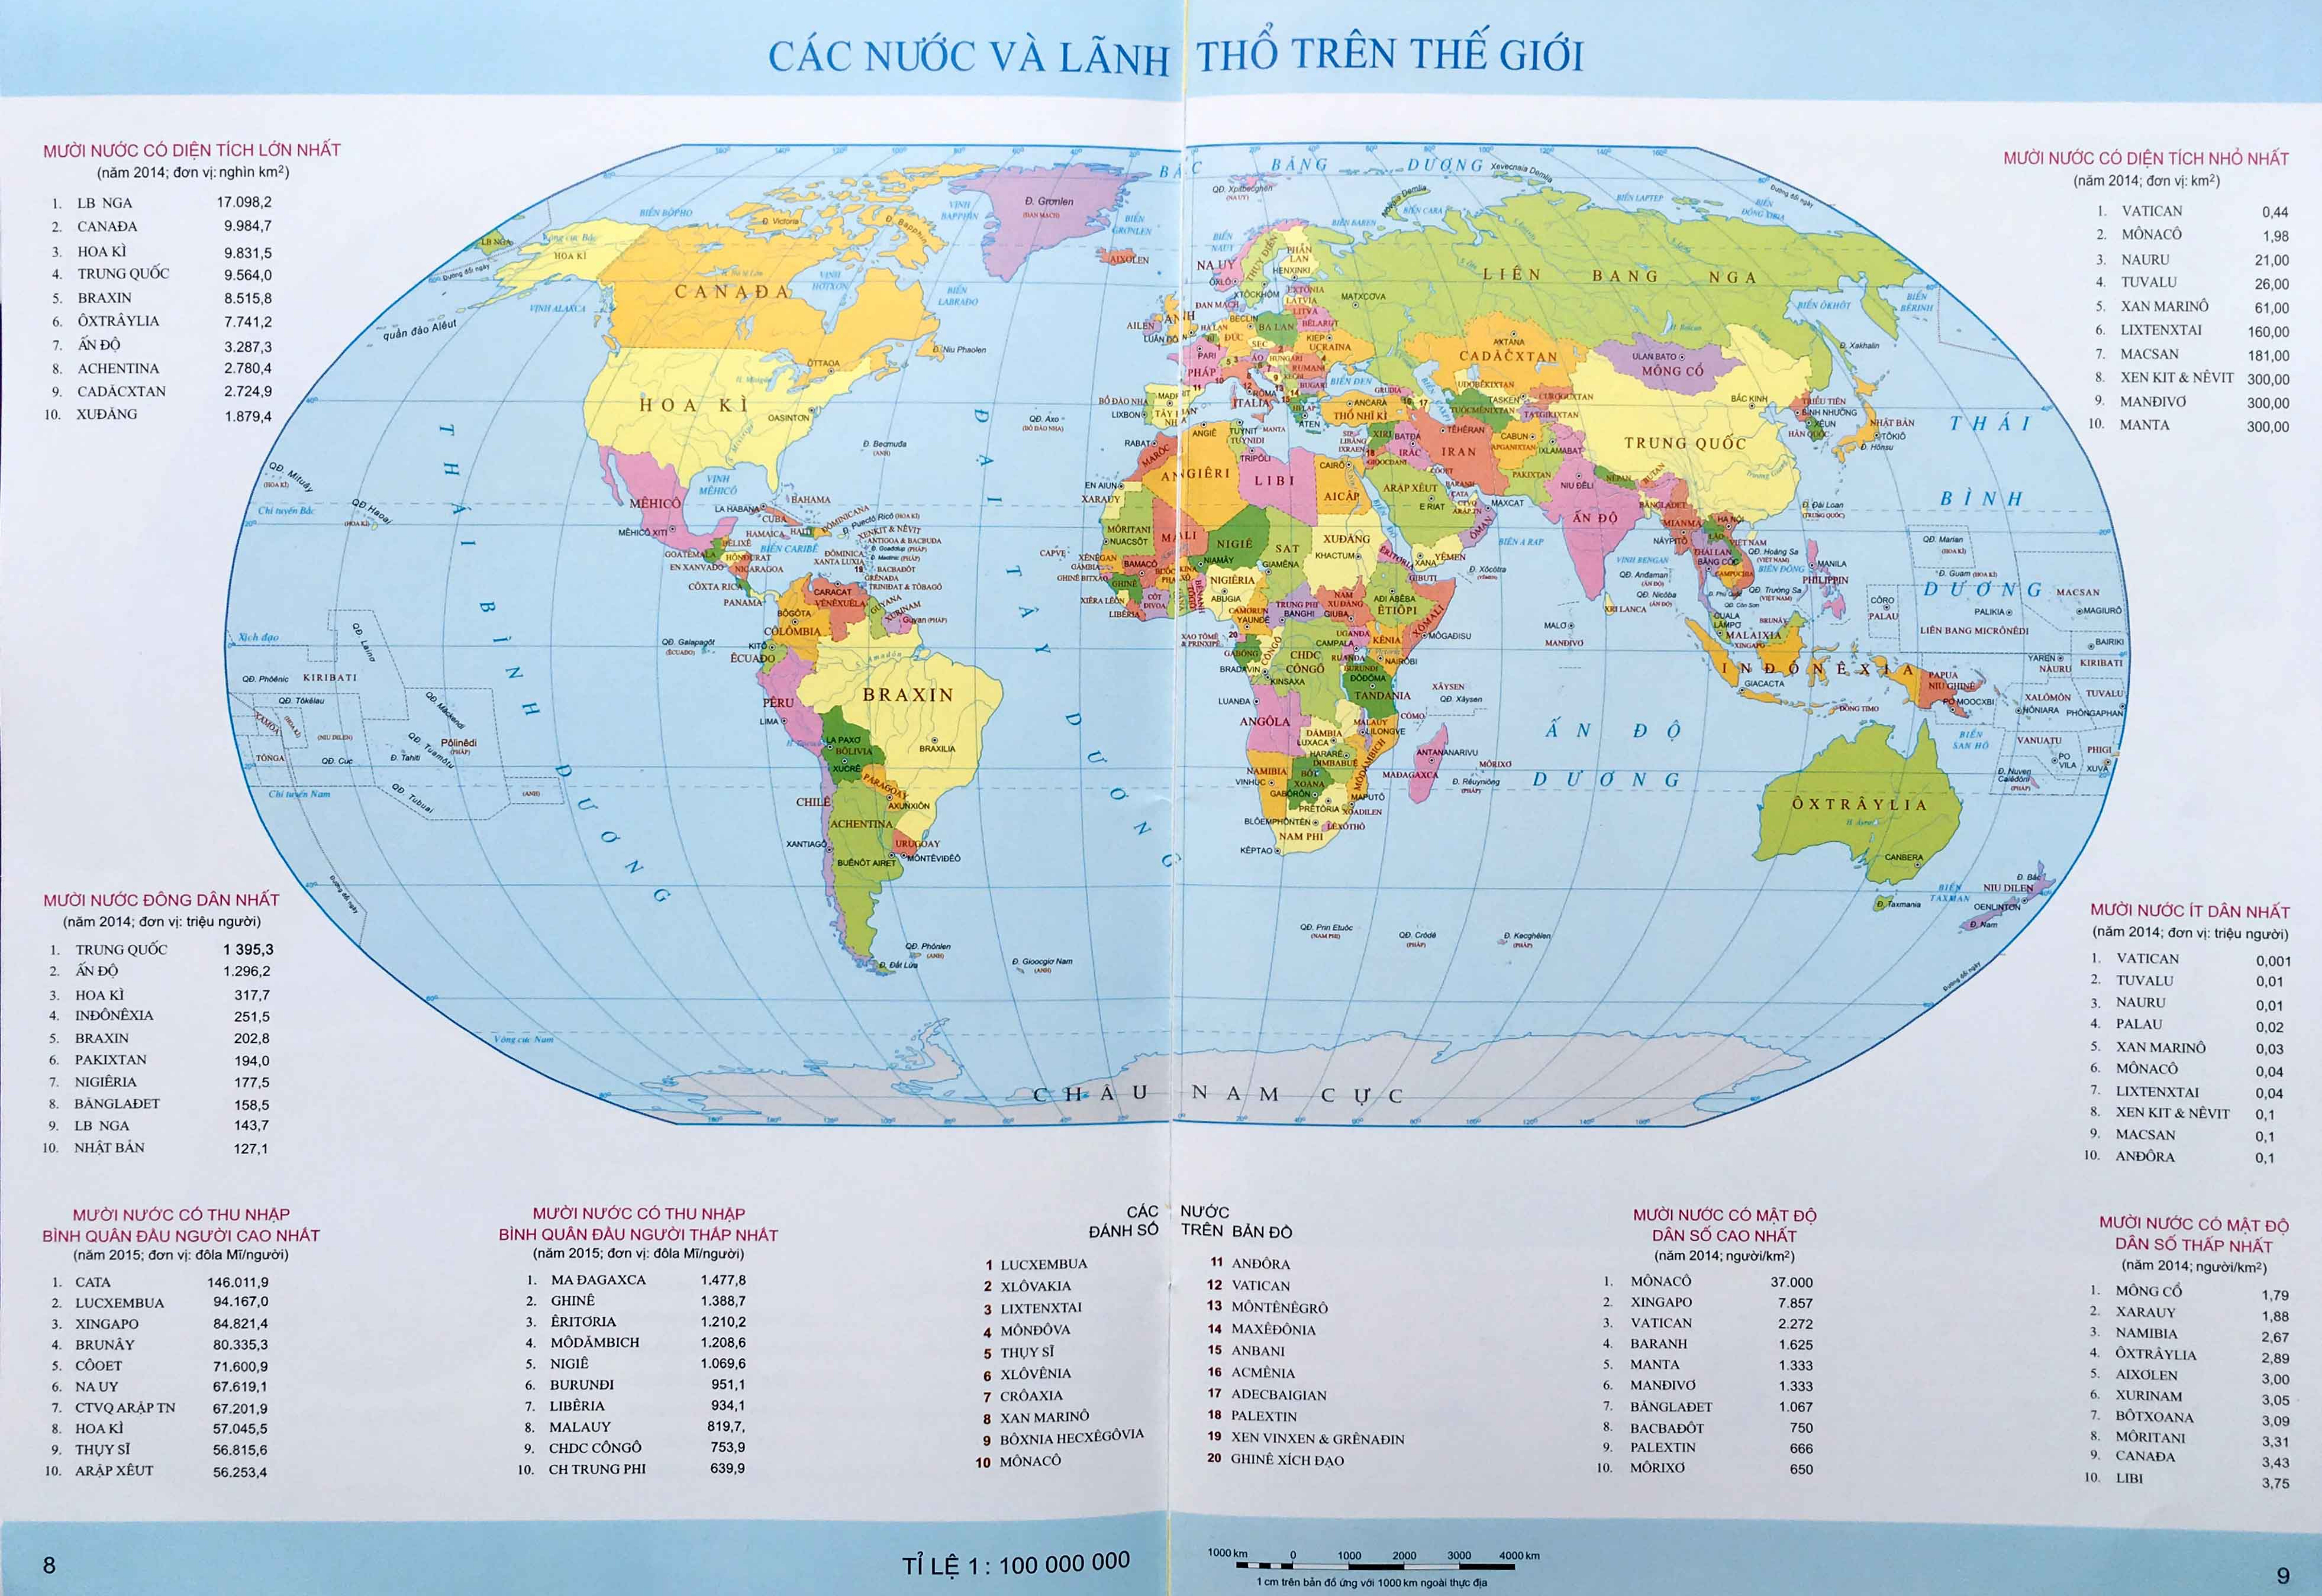 Bản đồ hành chính Thế Giới: Tìm hiểu về thế giới một cách chính xác và chi tiết nhất với bản đồ hành chính thế giới của chúng tôi. Bạn có thể tìm hiểu về các quốc gia, bang, tỉnh, thành phố và thậm chí cả các thủ đô của chúng.